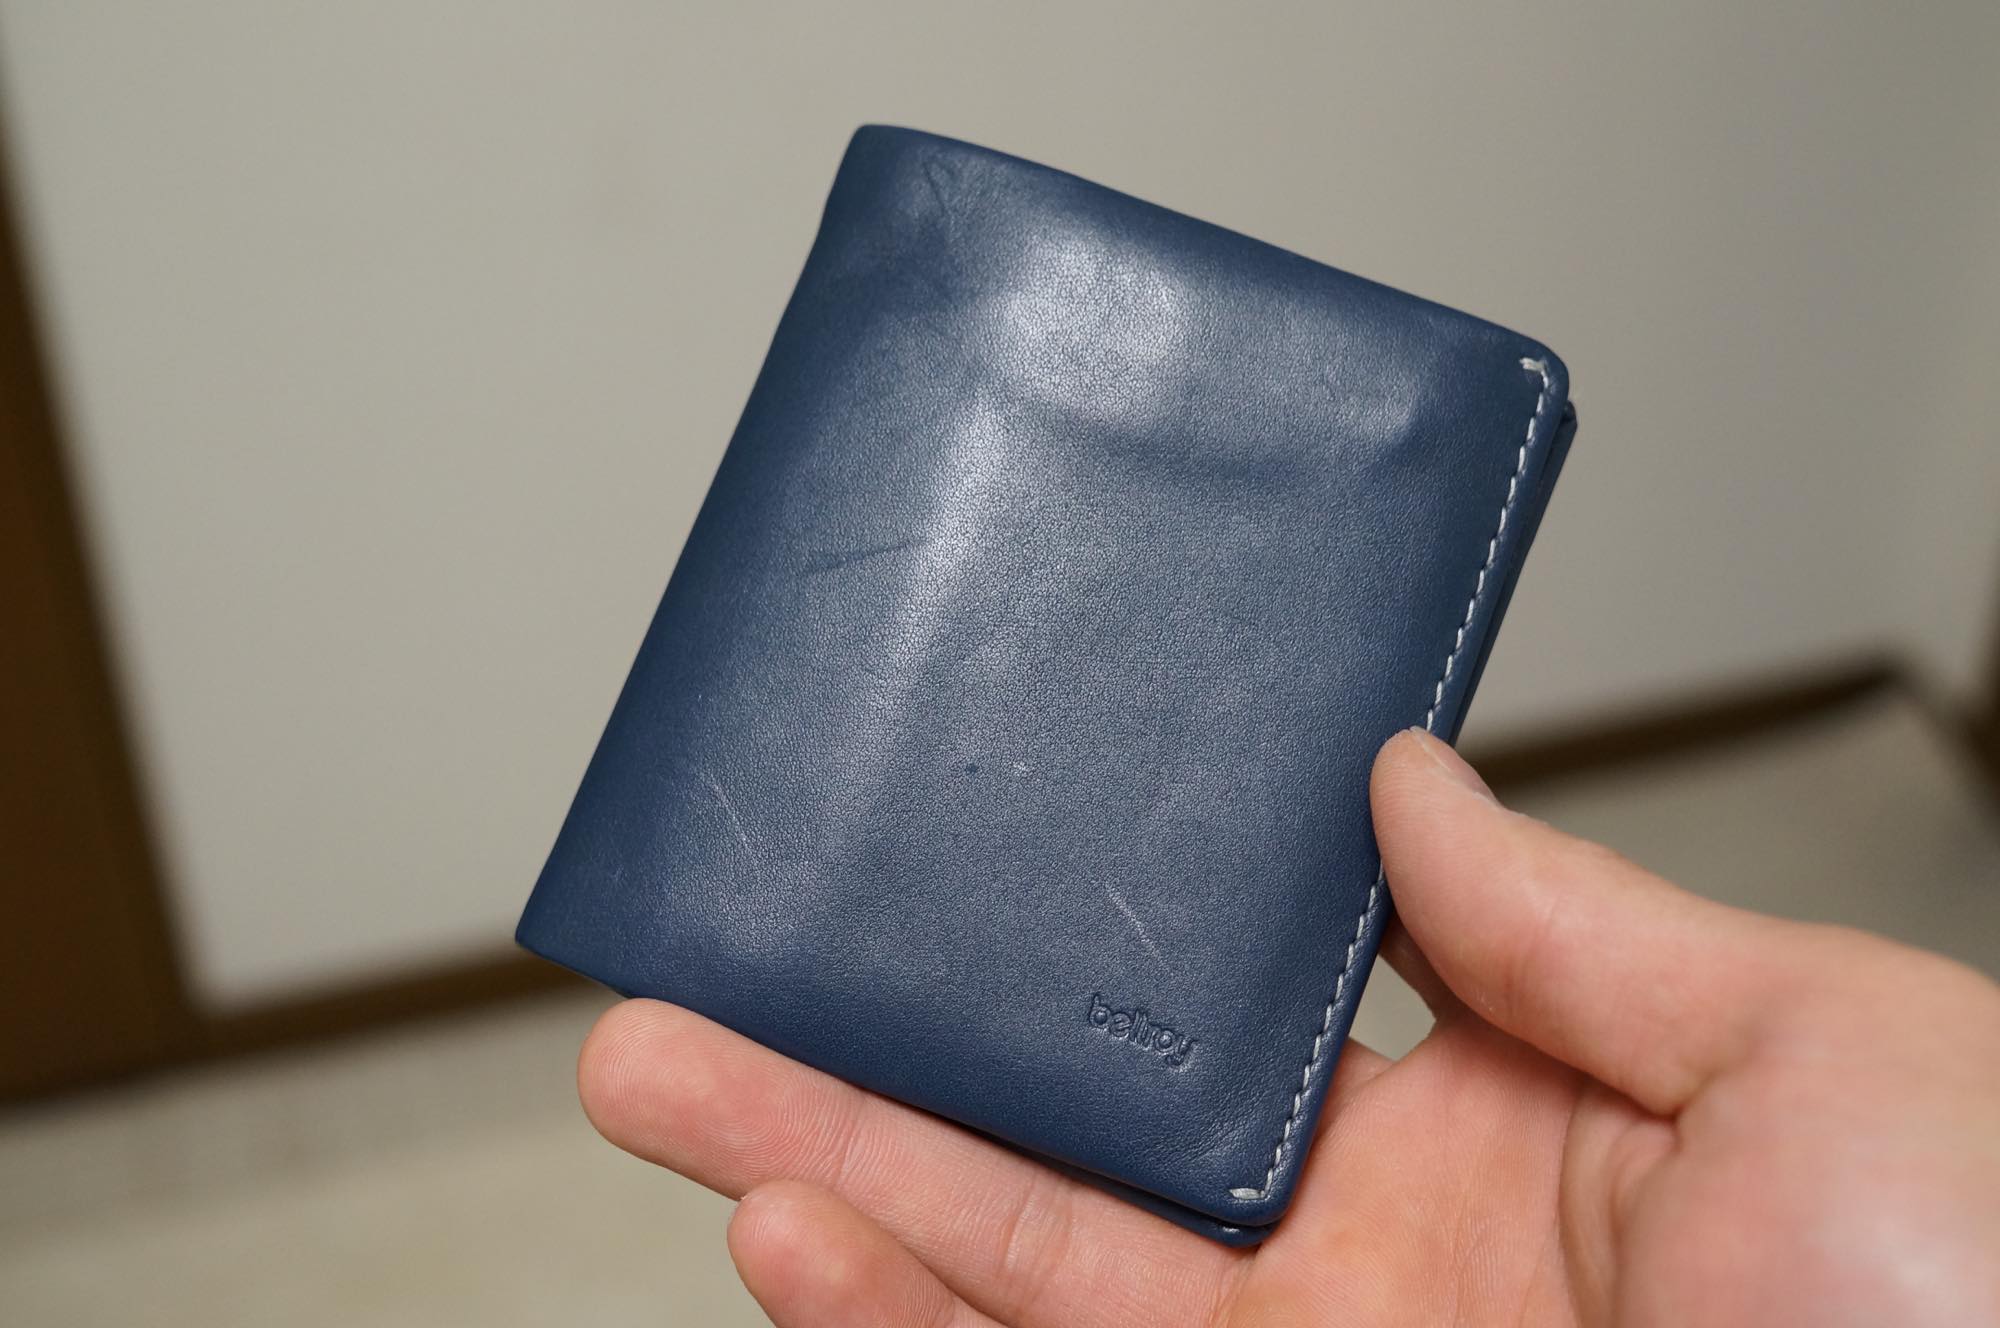 薄い財布『Bellroy(ベルロイ) Note Sleeve』を1ヶ月半使った感想。小物を財布に集約したい人にオススメ